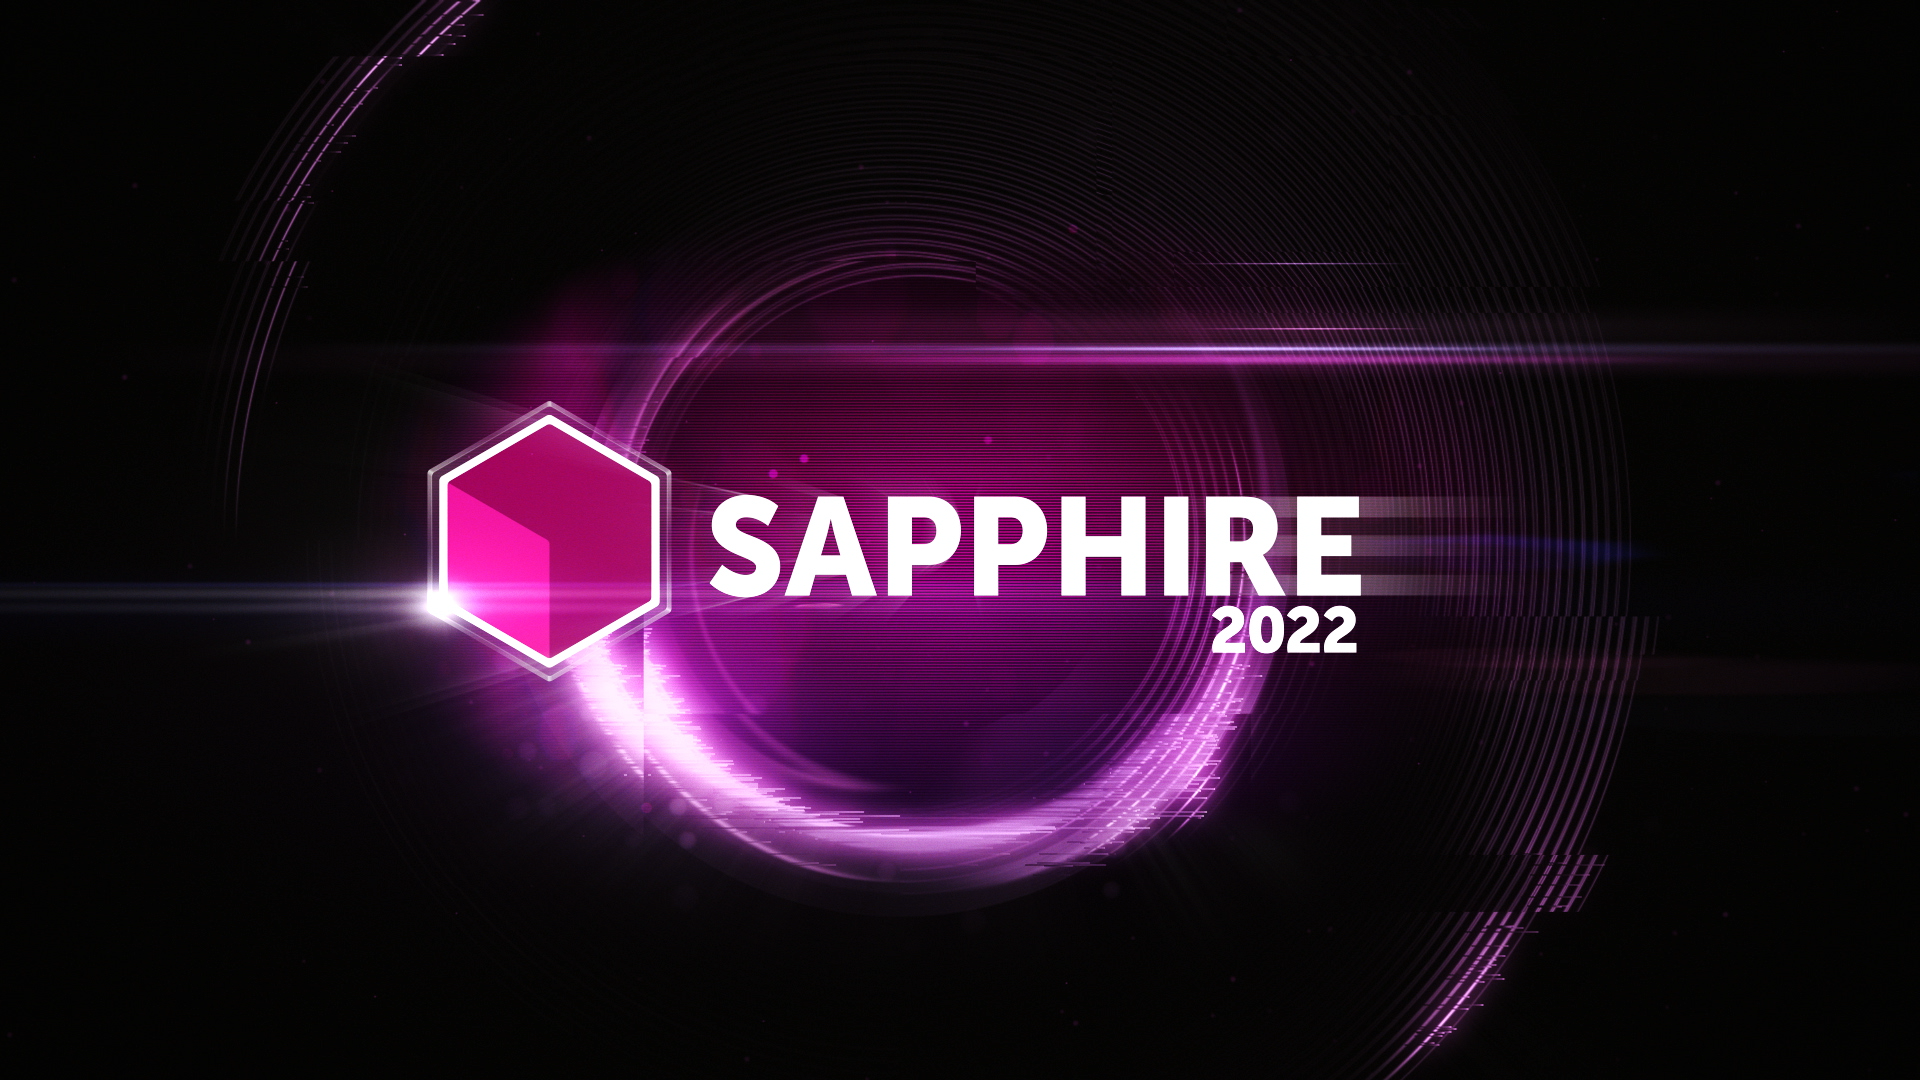 Sapphire 2022 hero image